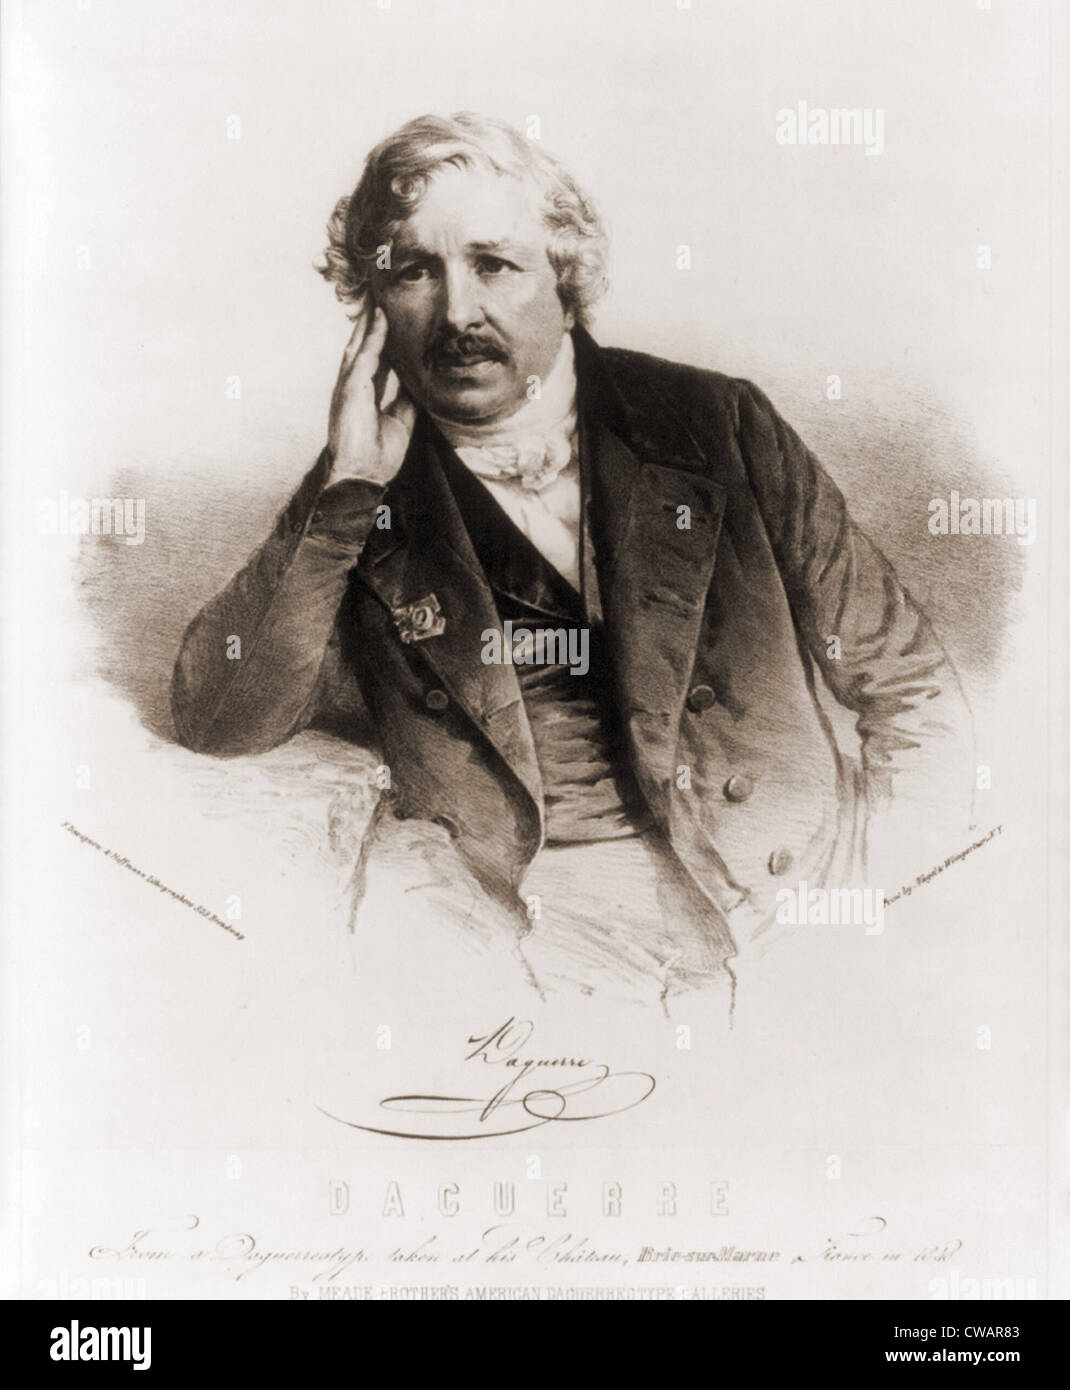 Louis Daguerre (1787-1851) inventore francese del Daguerreotype, il primo processo fotografico nel 1839. Ca. 1840. Foto Stock